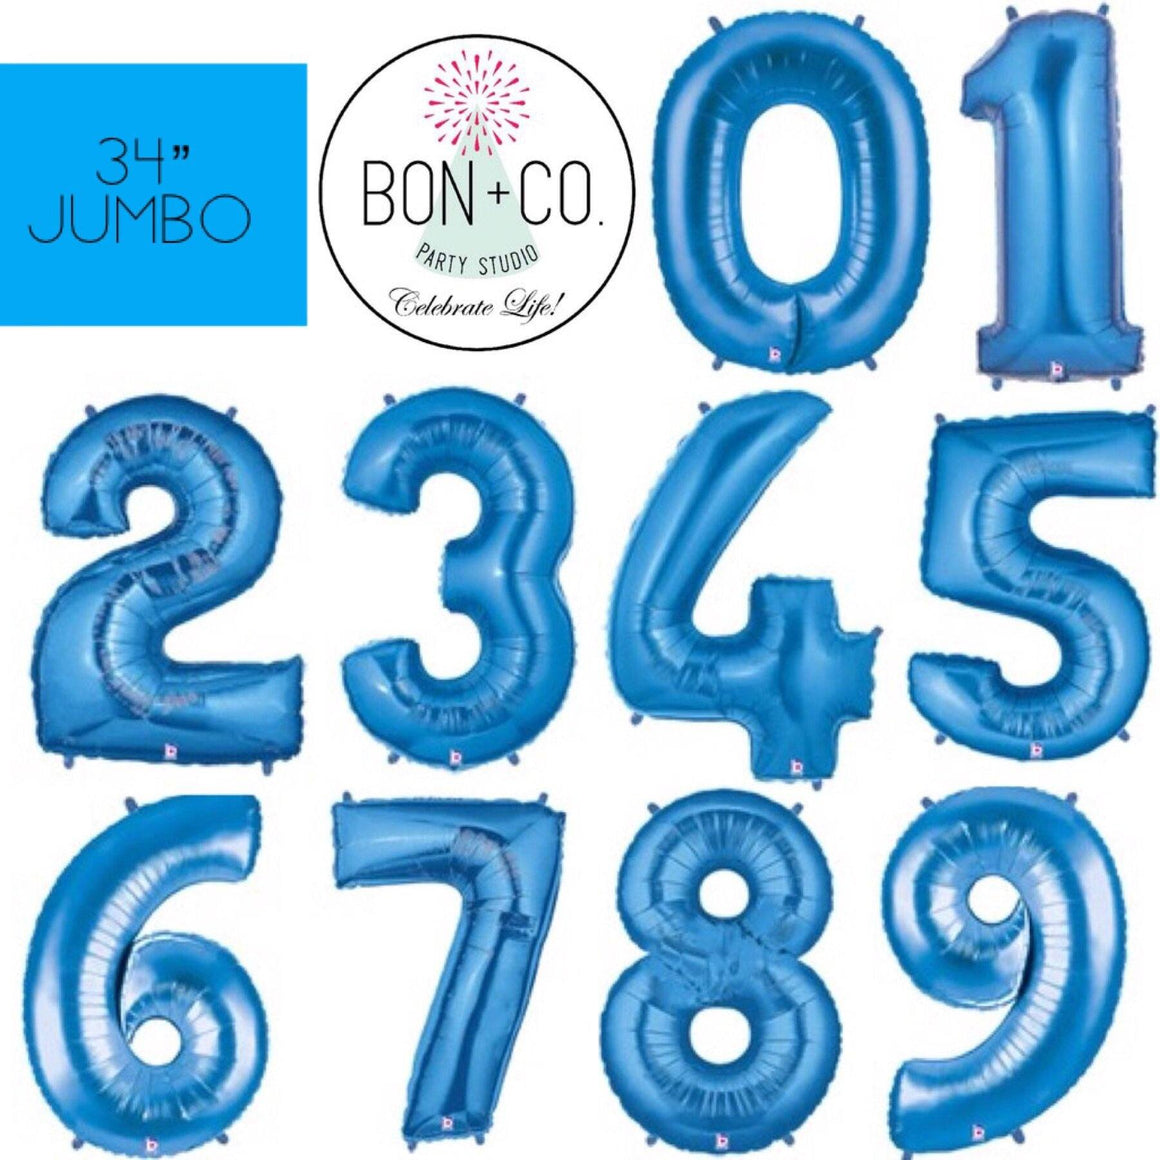 BALLOON BAR - 34" JUMBO NUMBER BLUE, Balloons, BETALLIC - Bon + Co. Party Studio